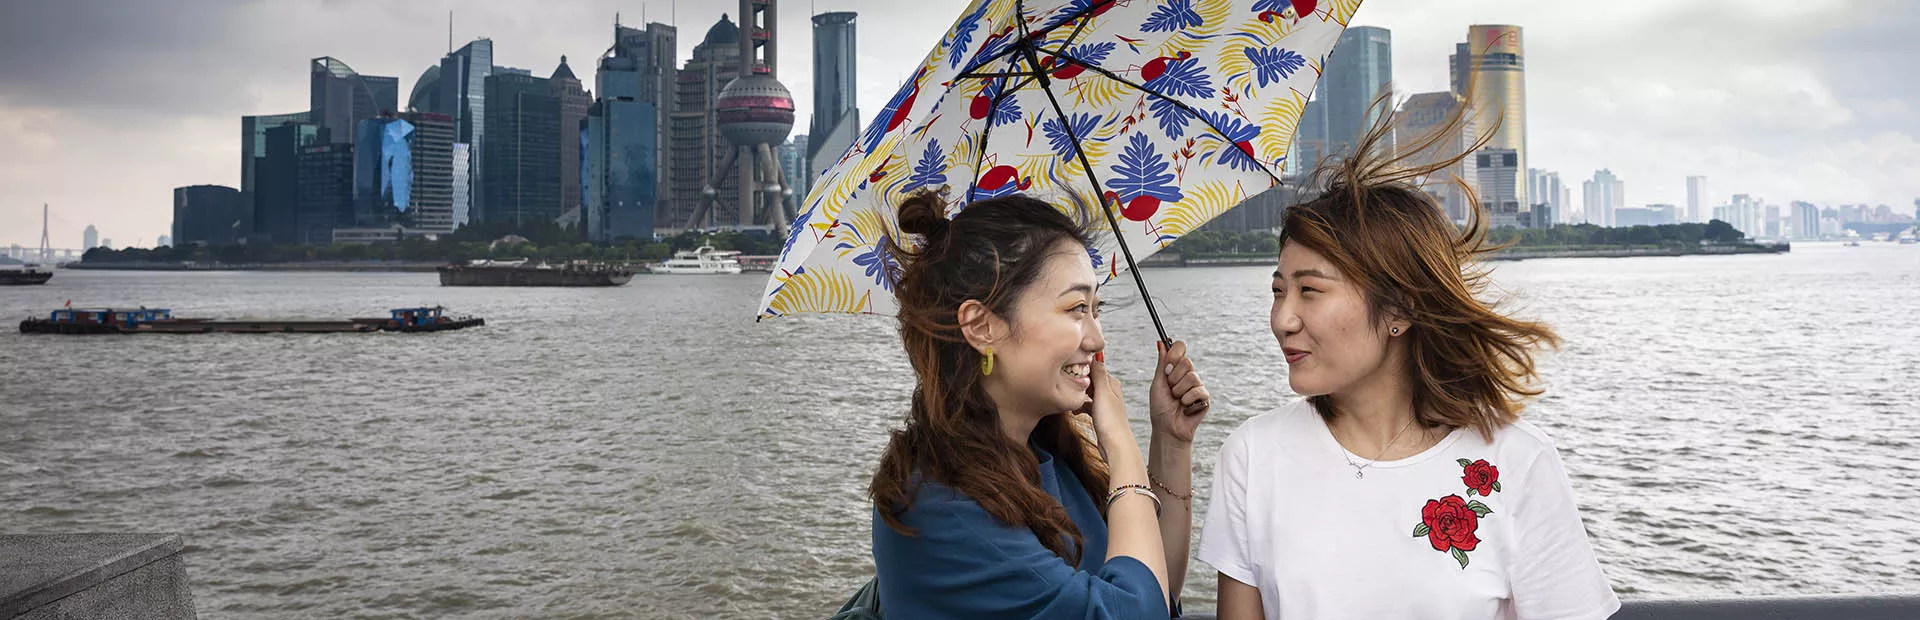 Chinese girls sharing umbrella